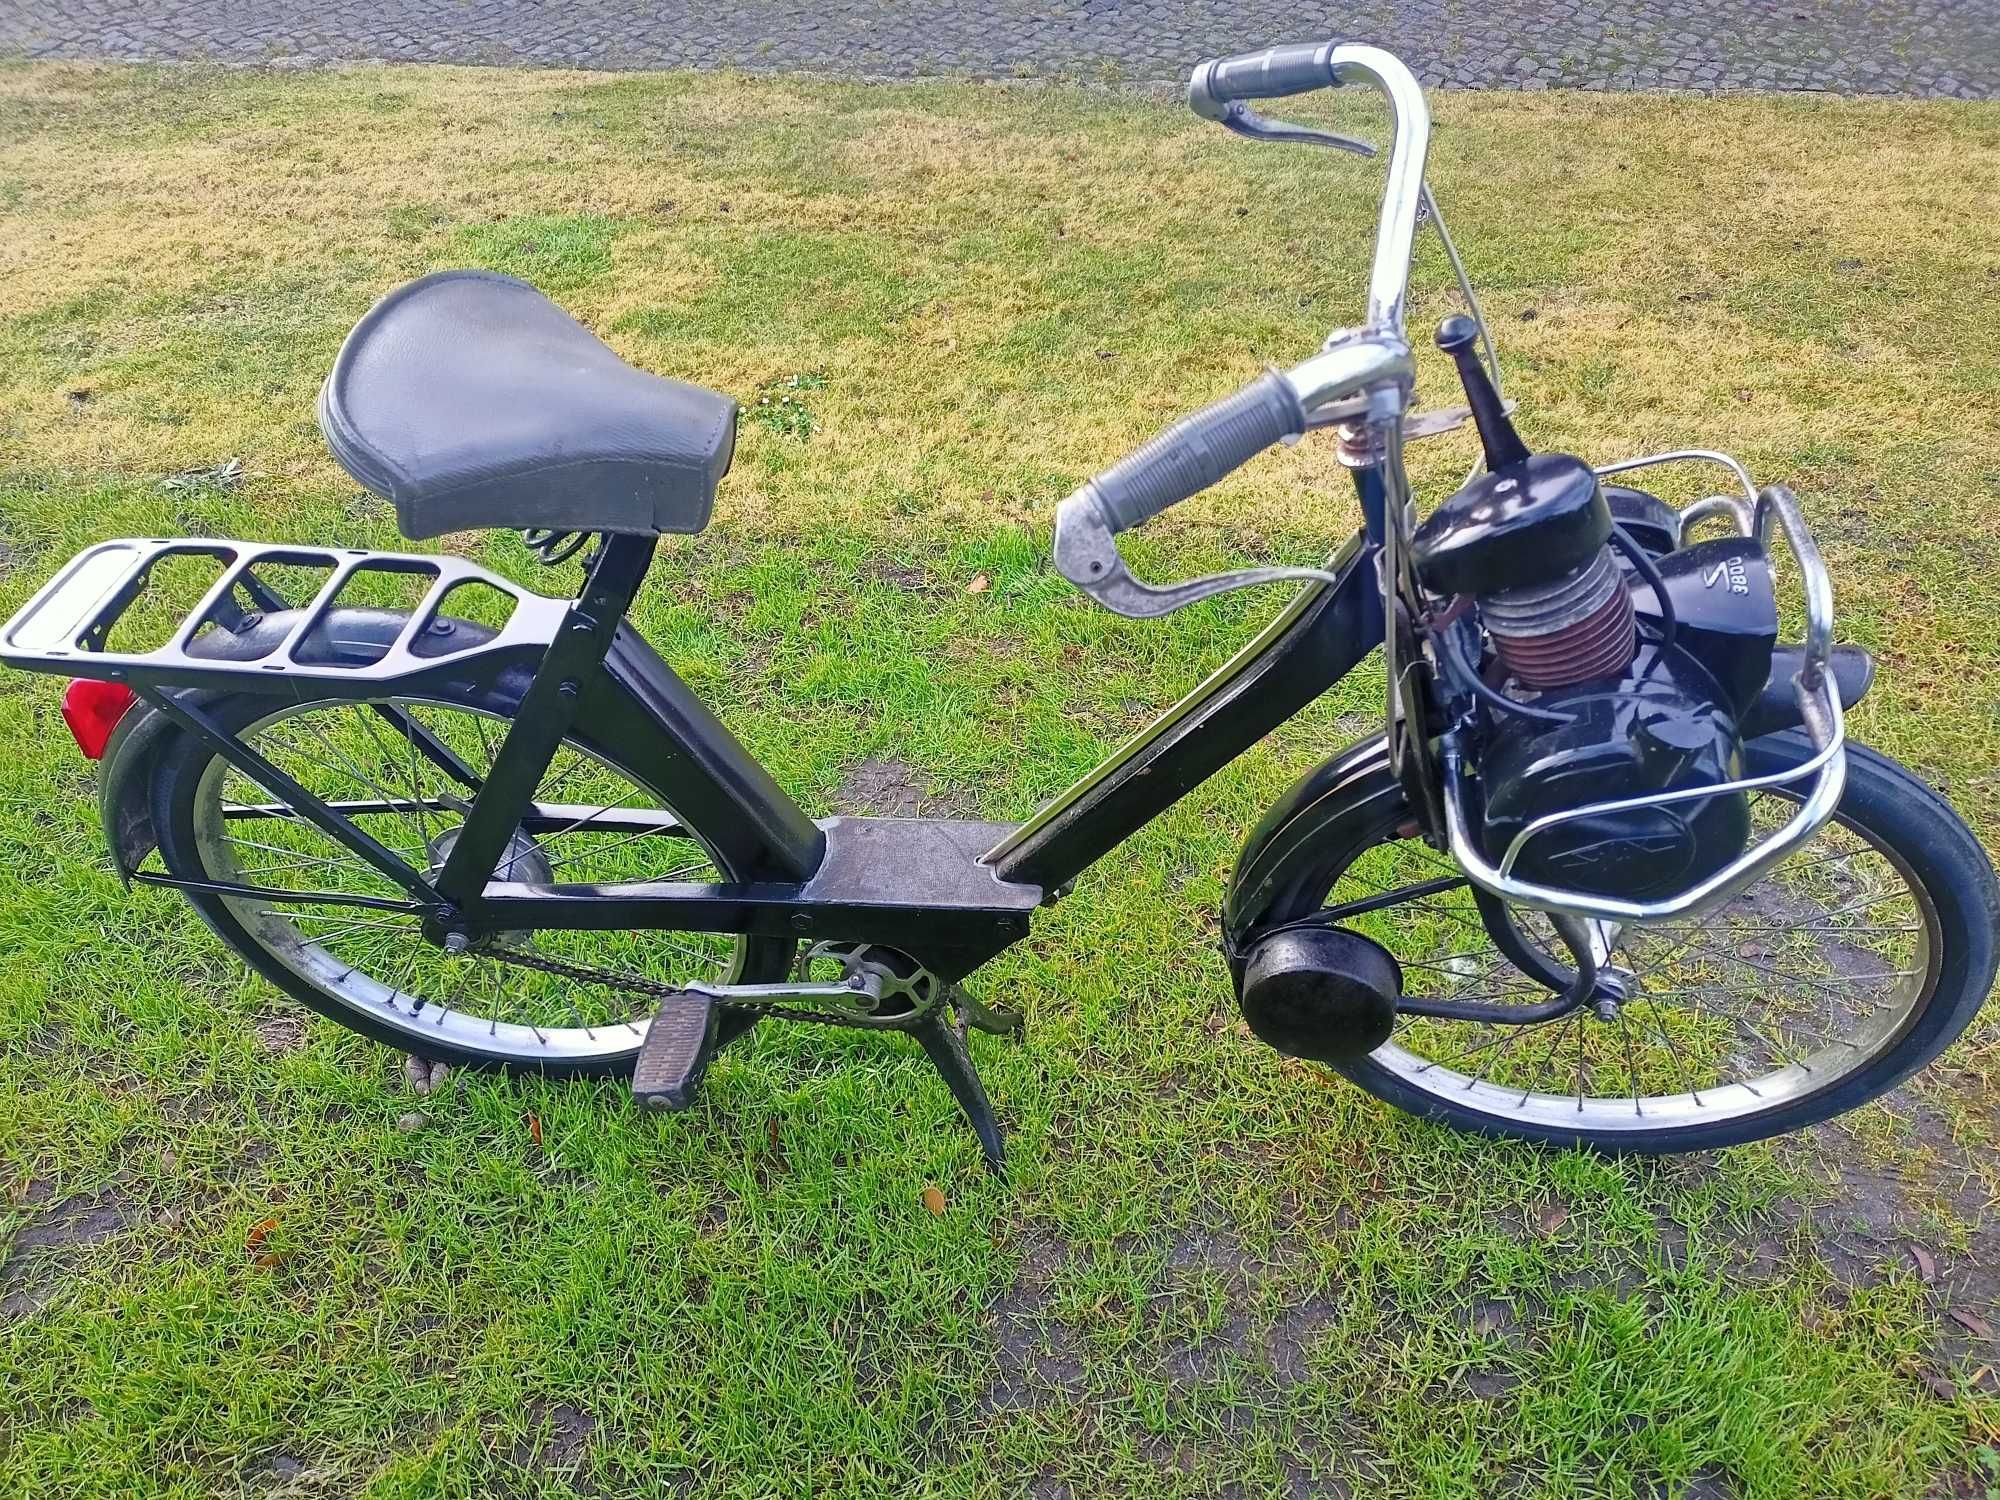 Velo Solex3800 - sprawny-rower ze spalinowym wspomaganiem